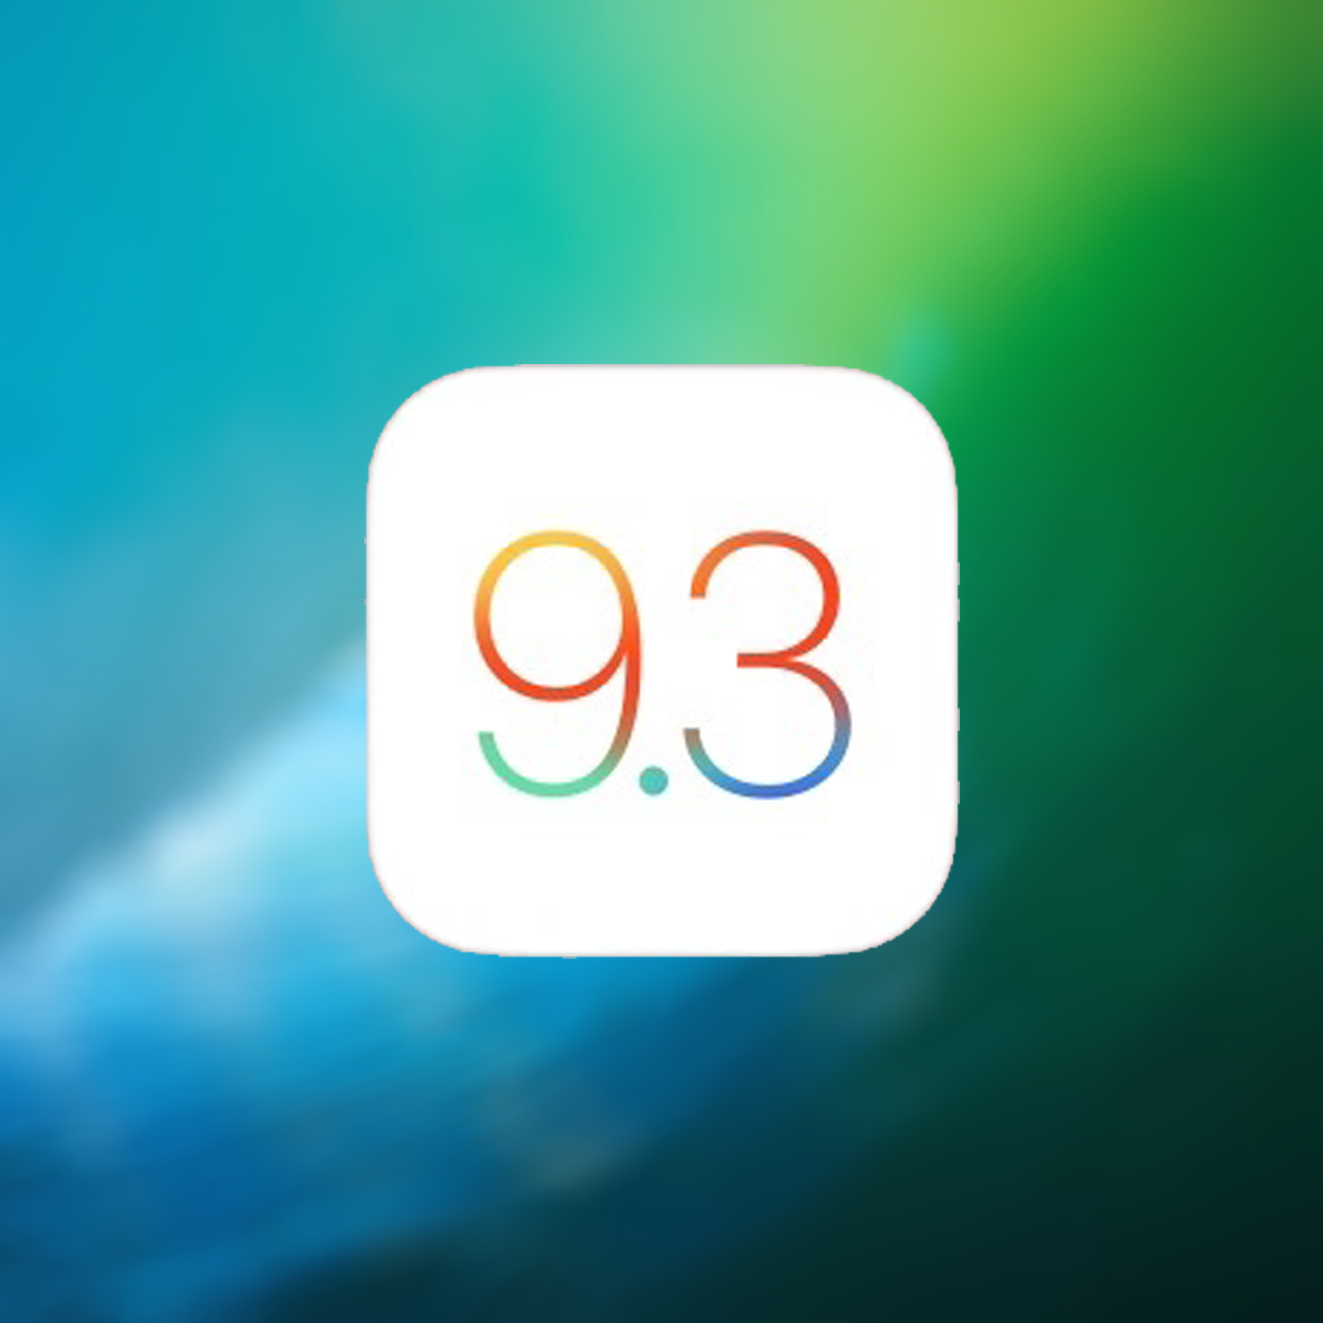 Changelog voor iOS 9.3